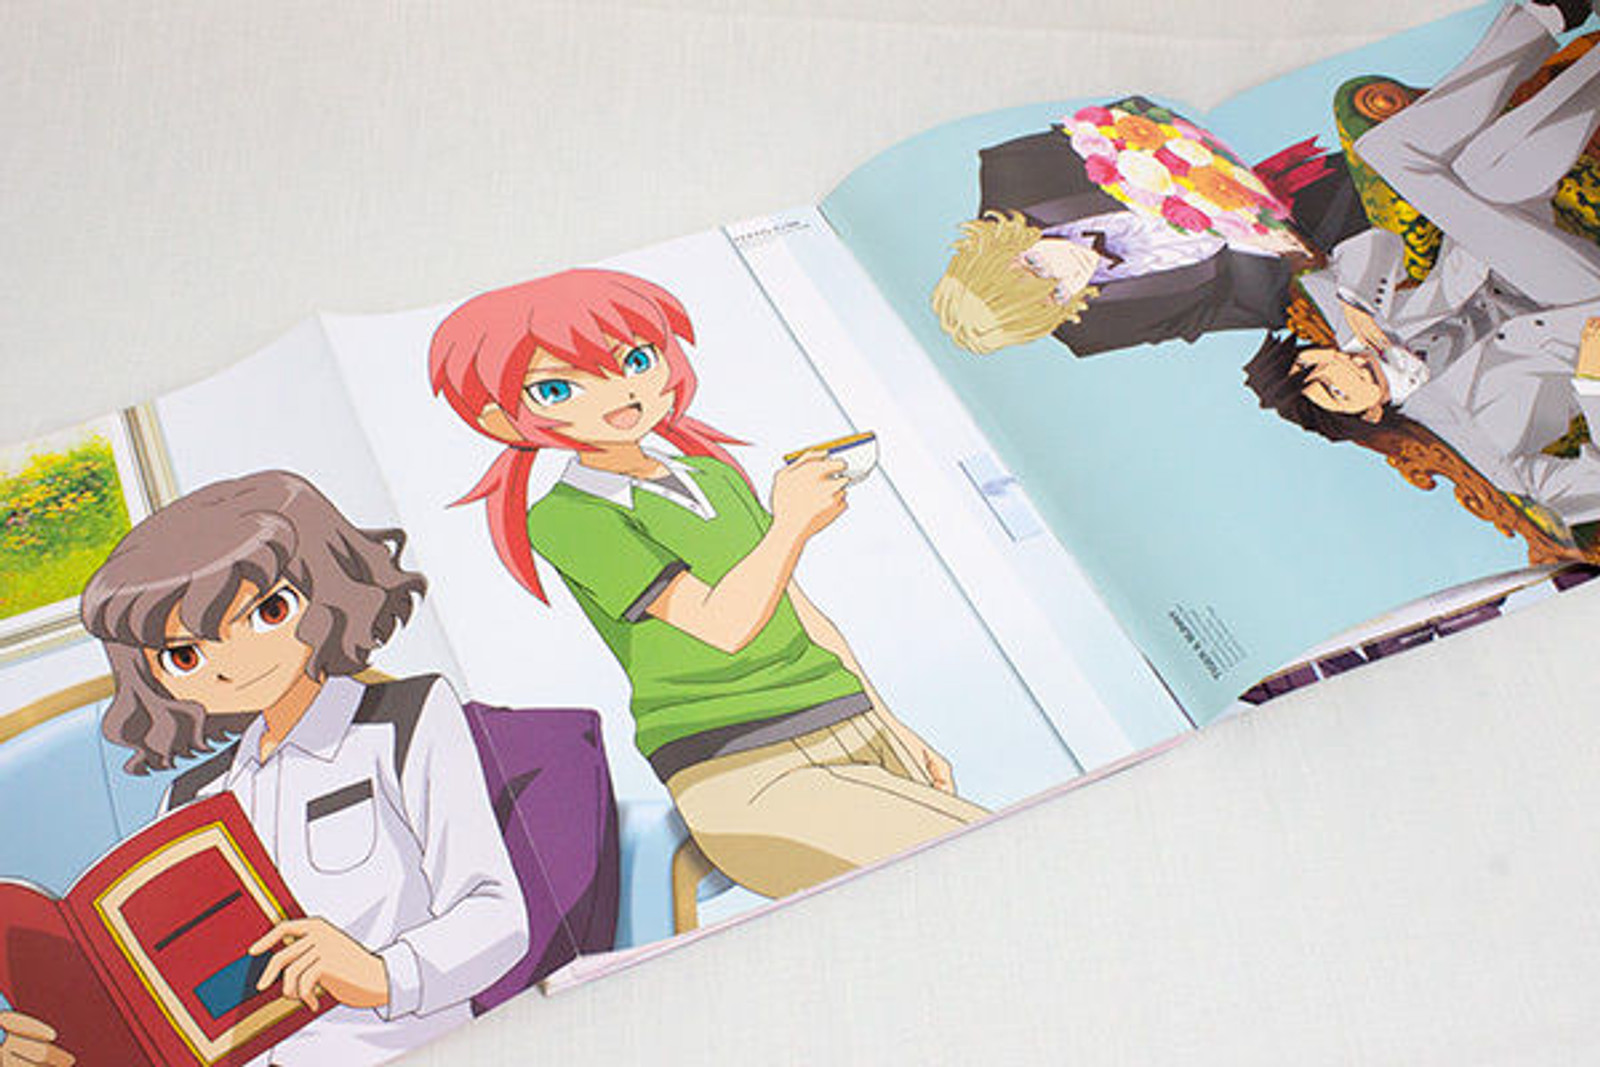 Prince Animage Win/2012 Japan Anime Magazine Tiger&Bunny/Uta No Prince Sama